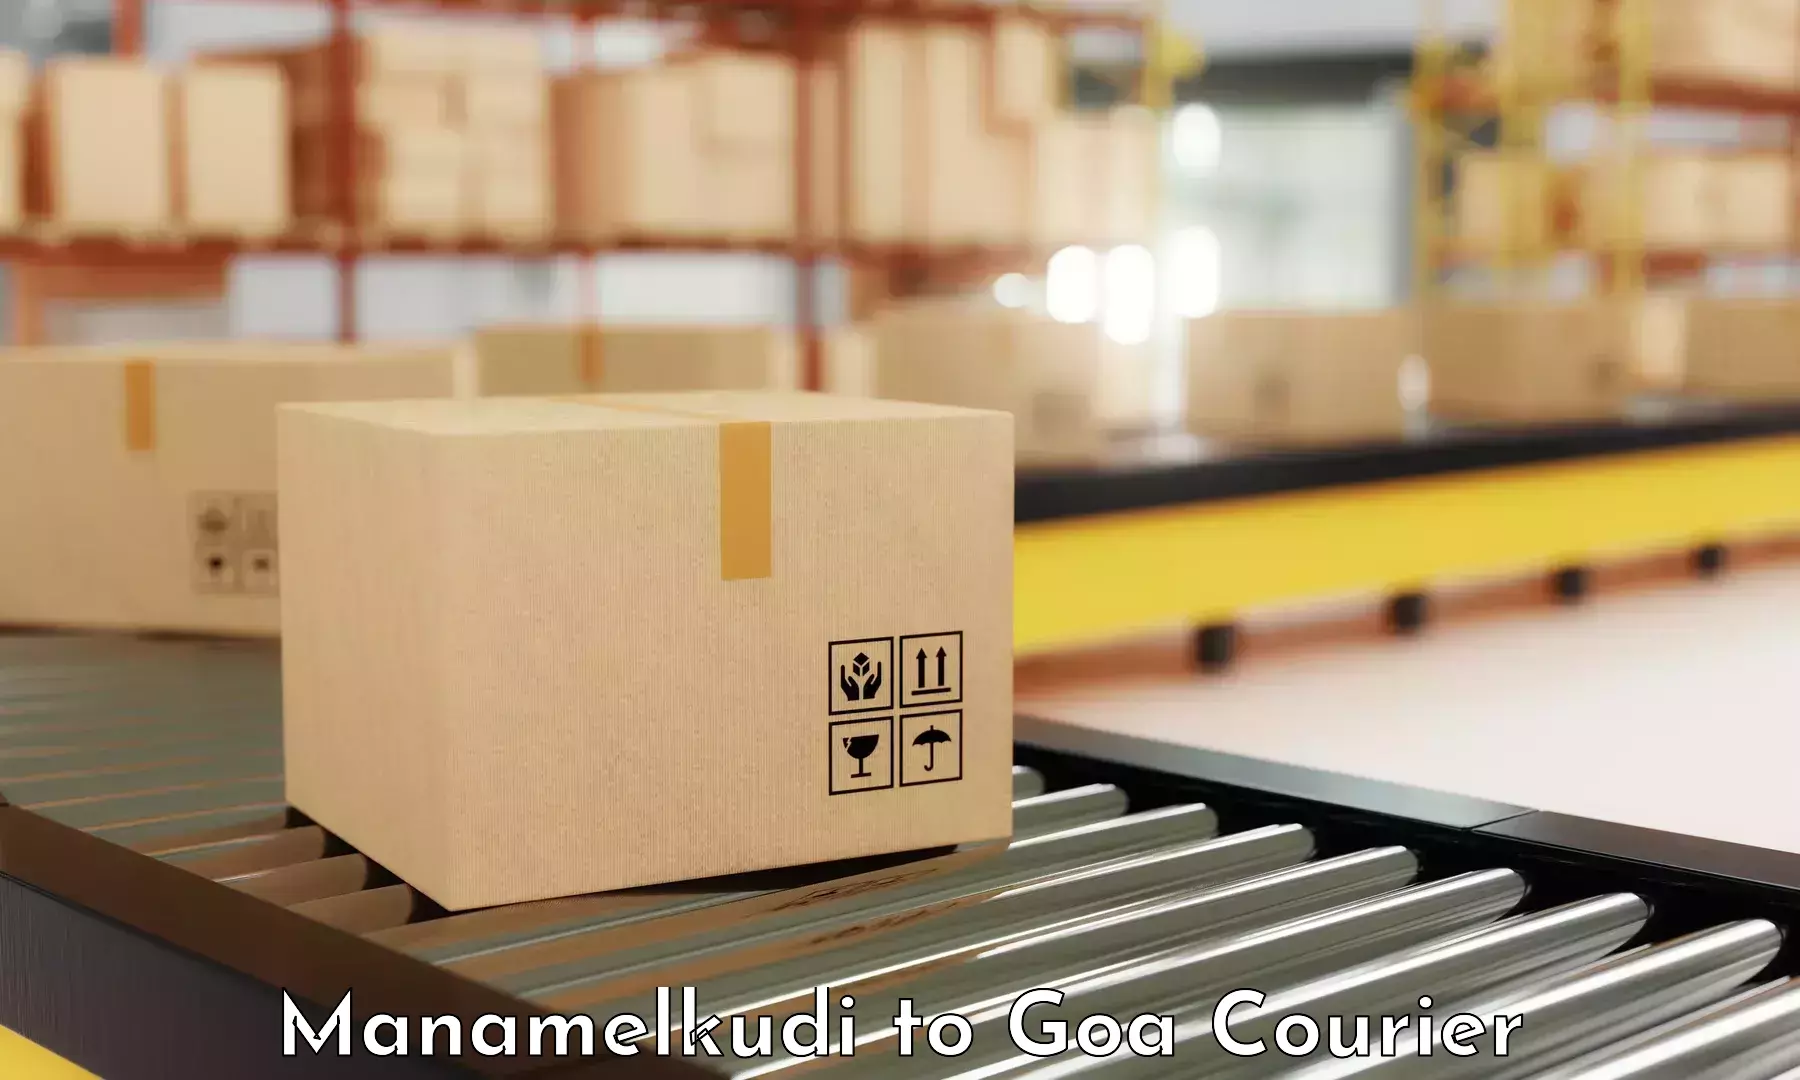 Flexible parcel services Manamelkudi to Panjim